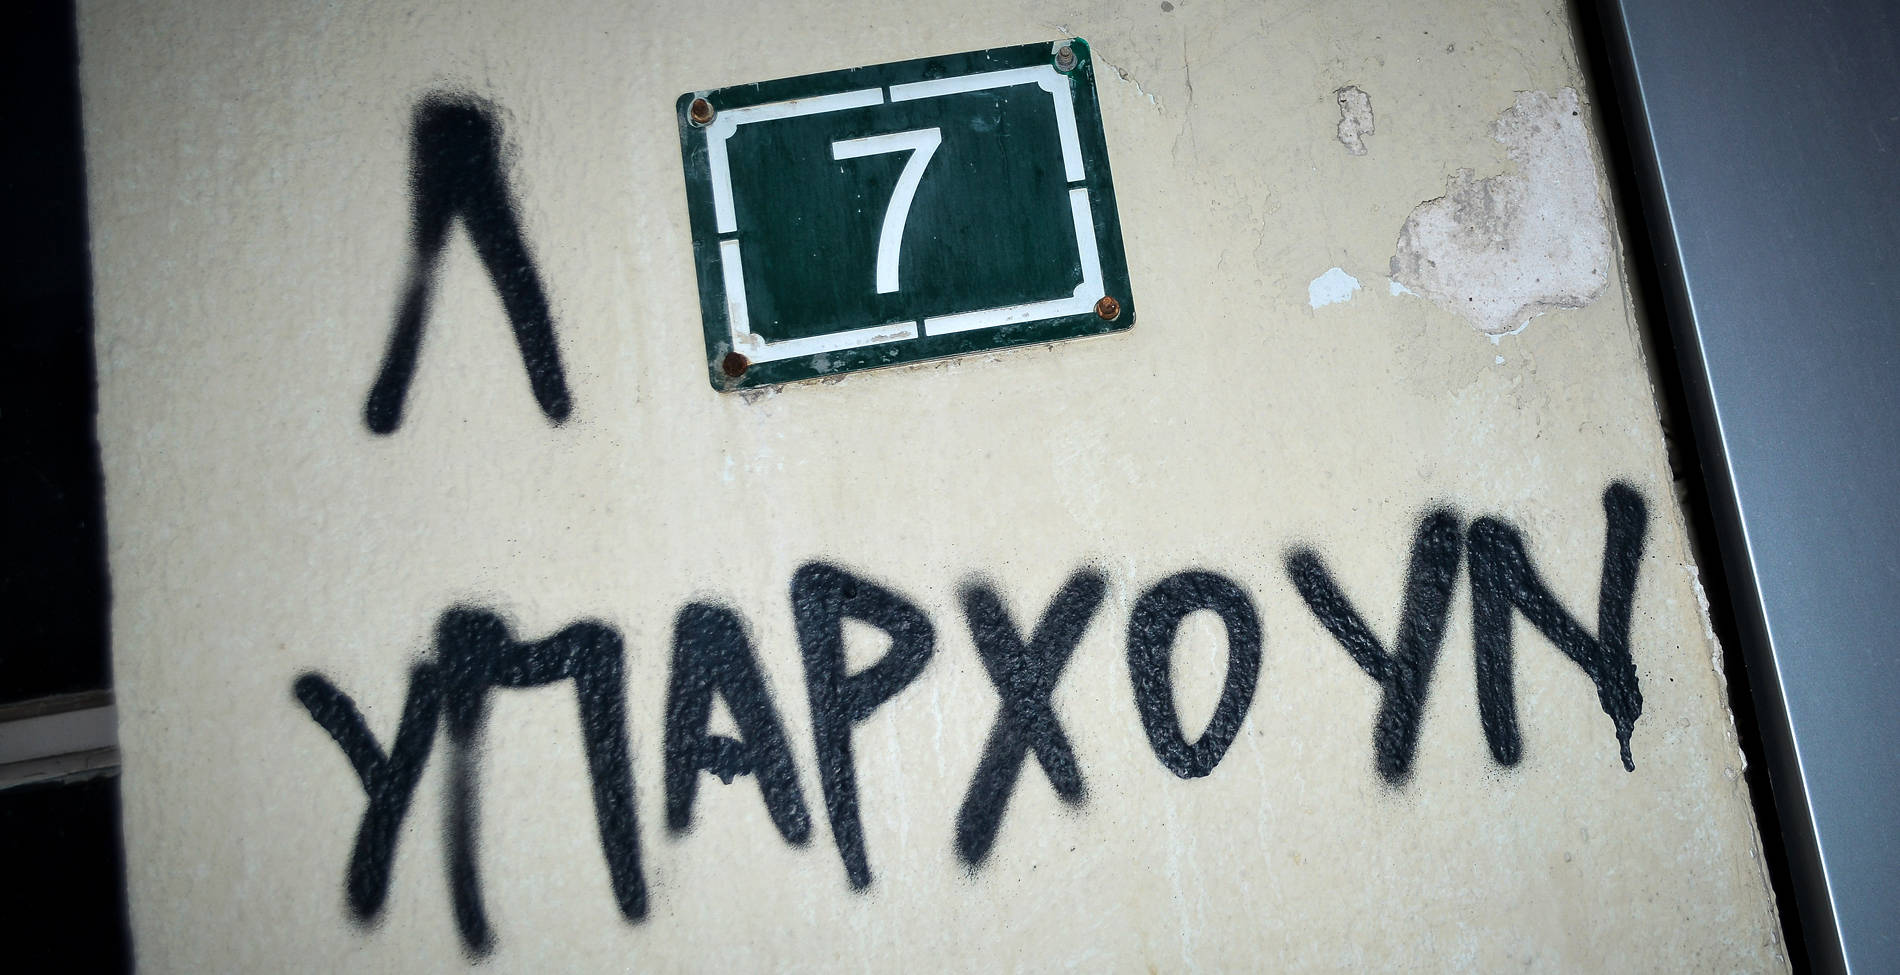 Ο Ελληνας πριν την κρίση, μετά την κρίση και τι έμεινε ίδιο στη ζωή του